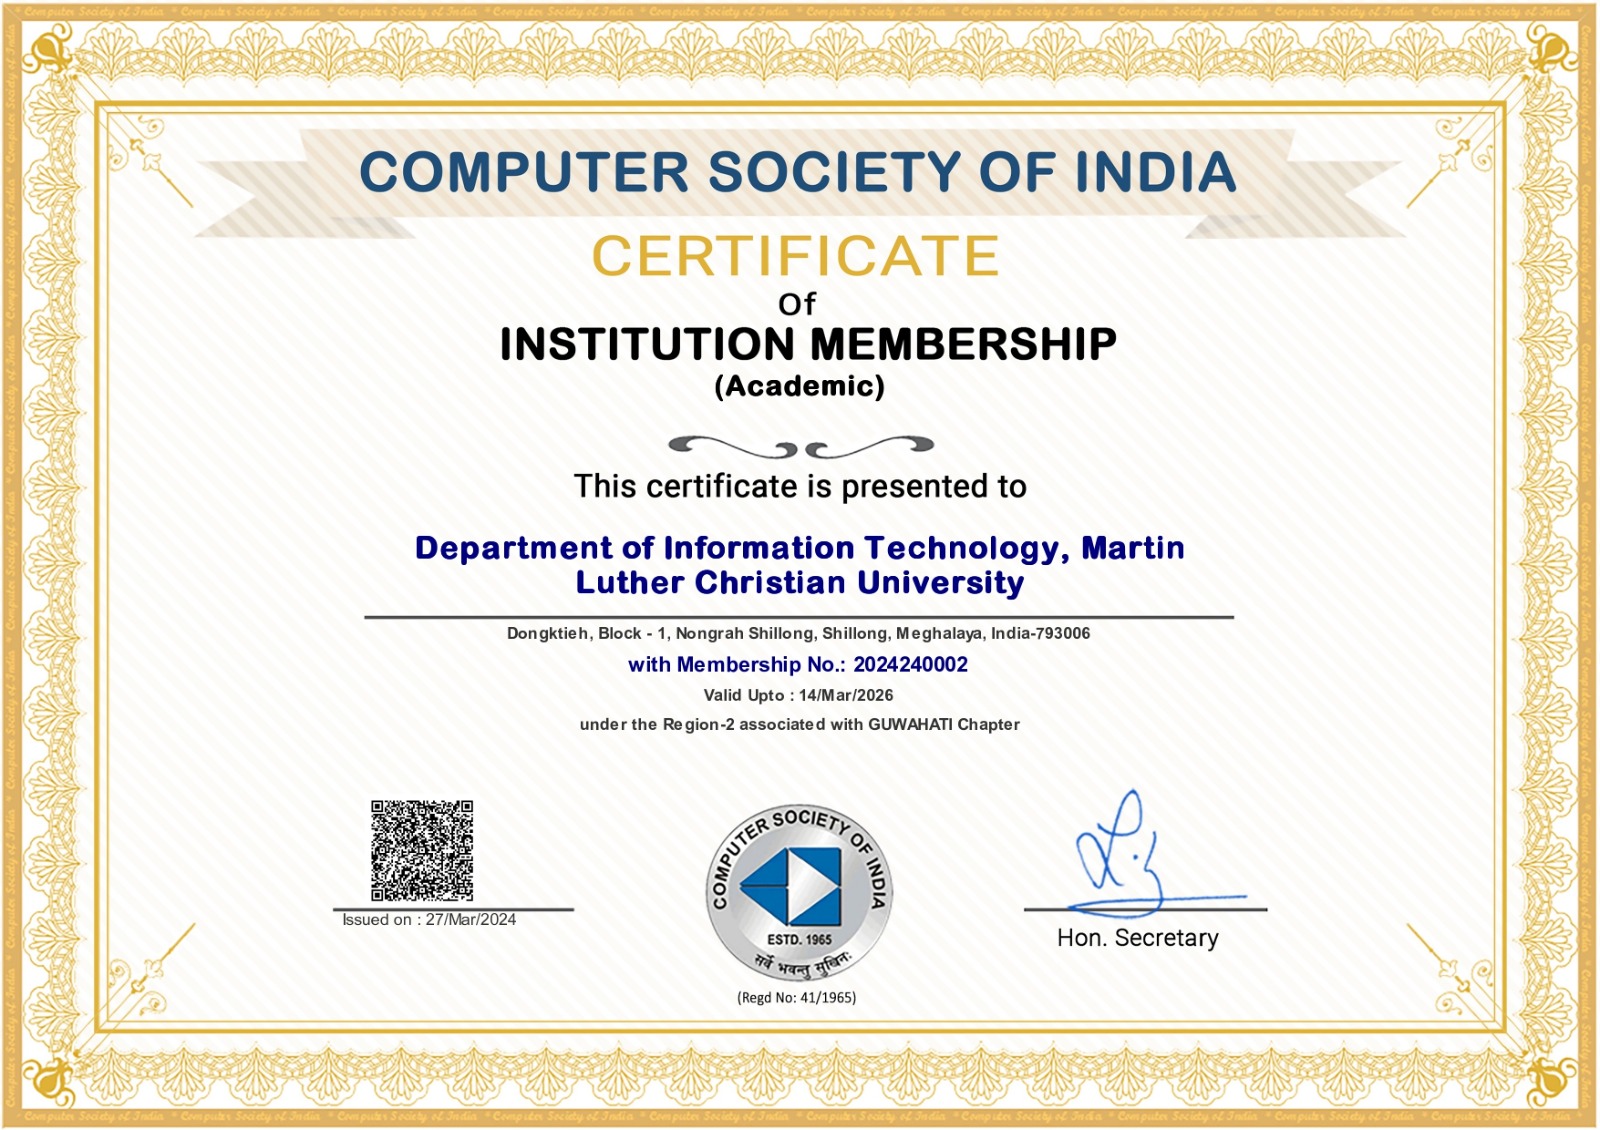 IT Certificate